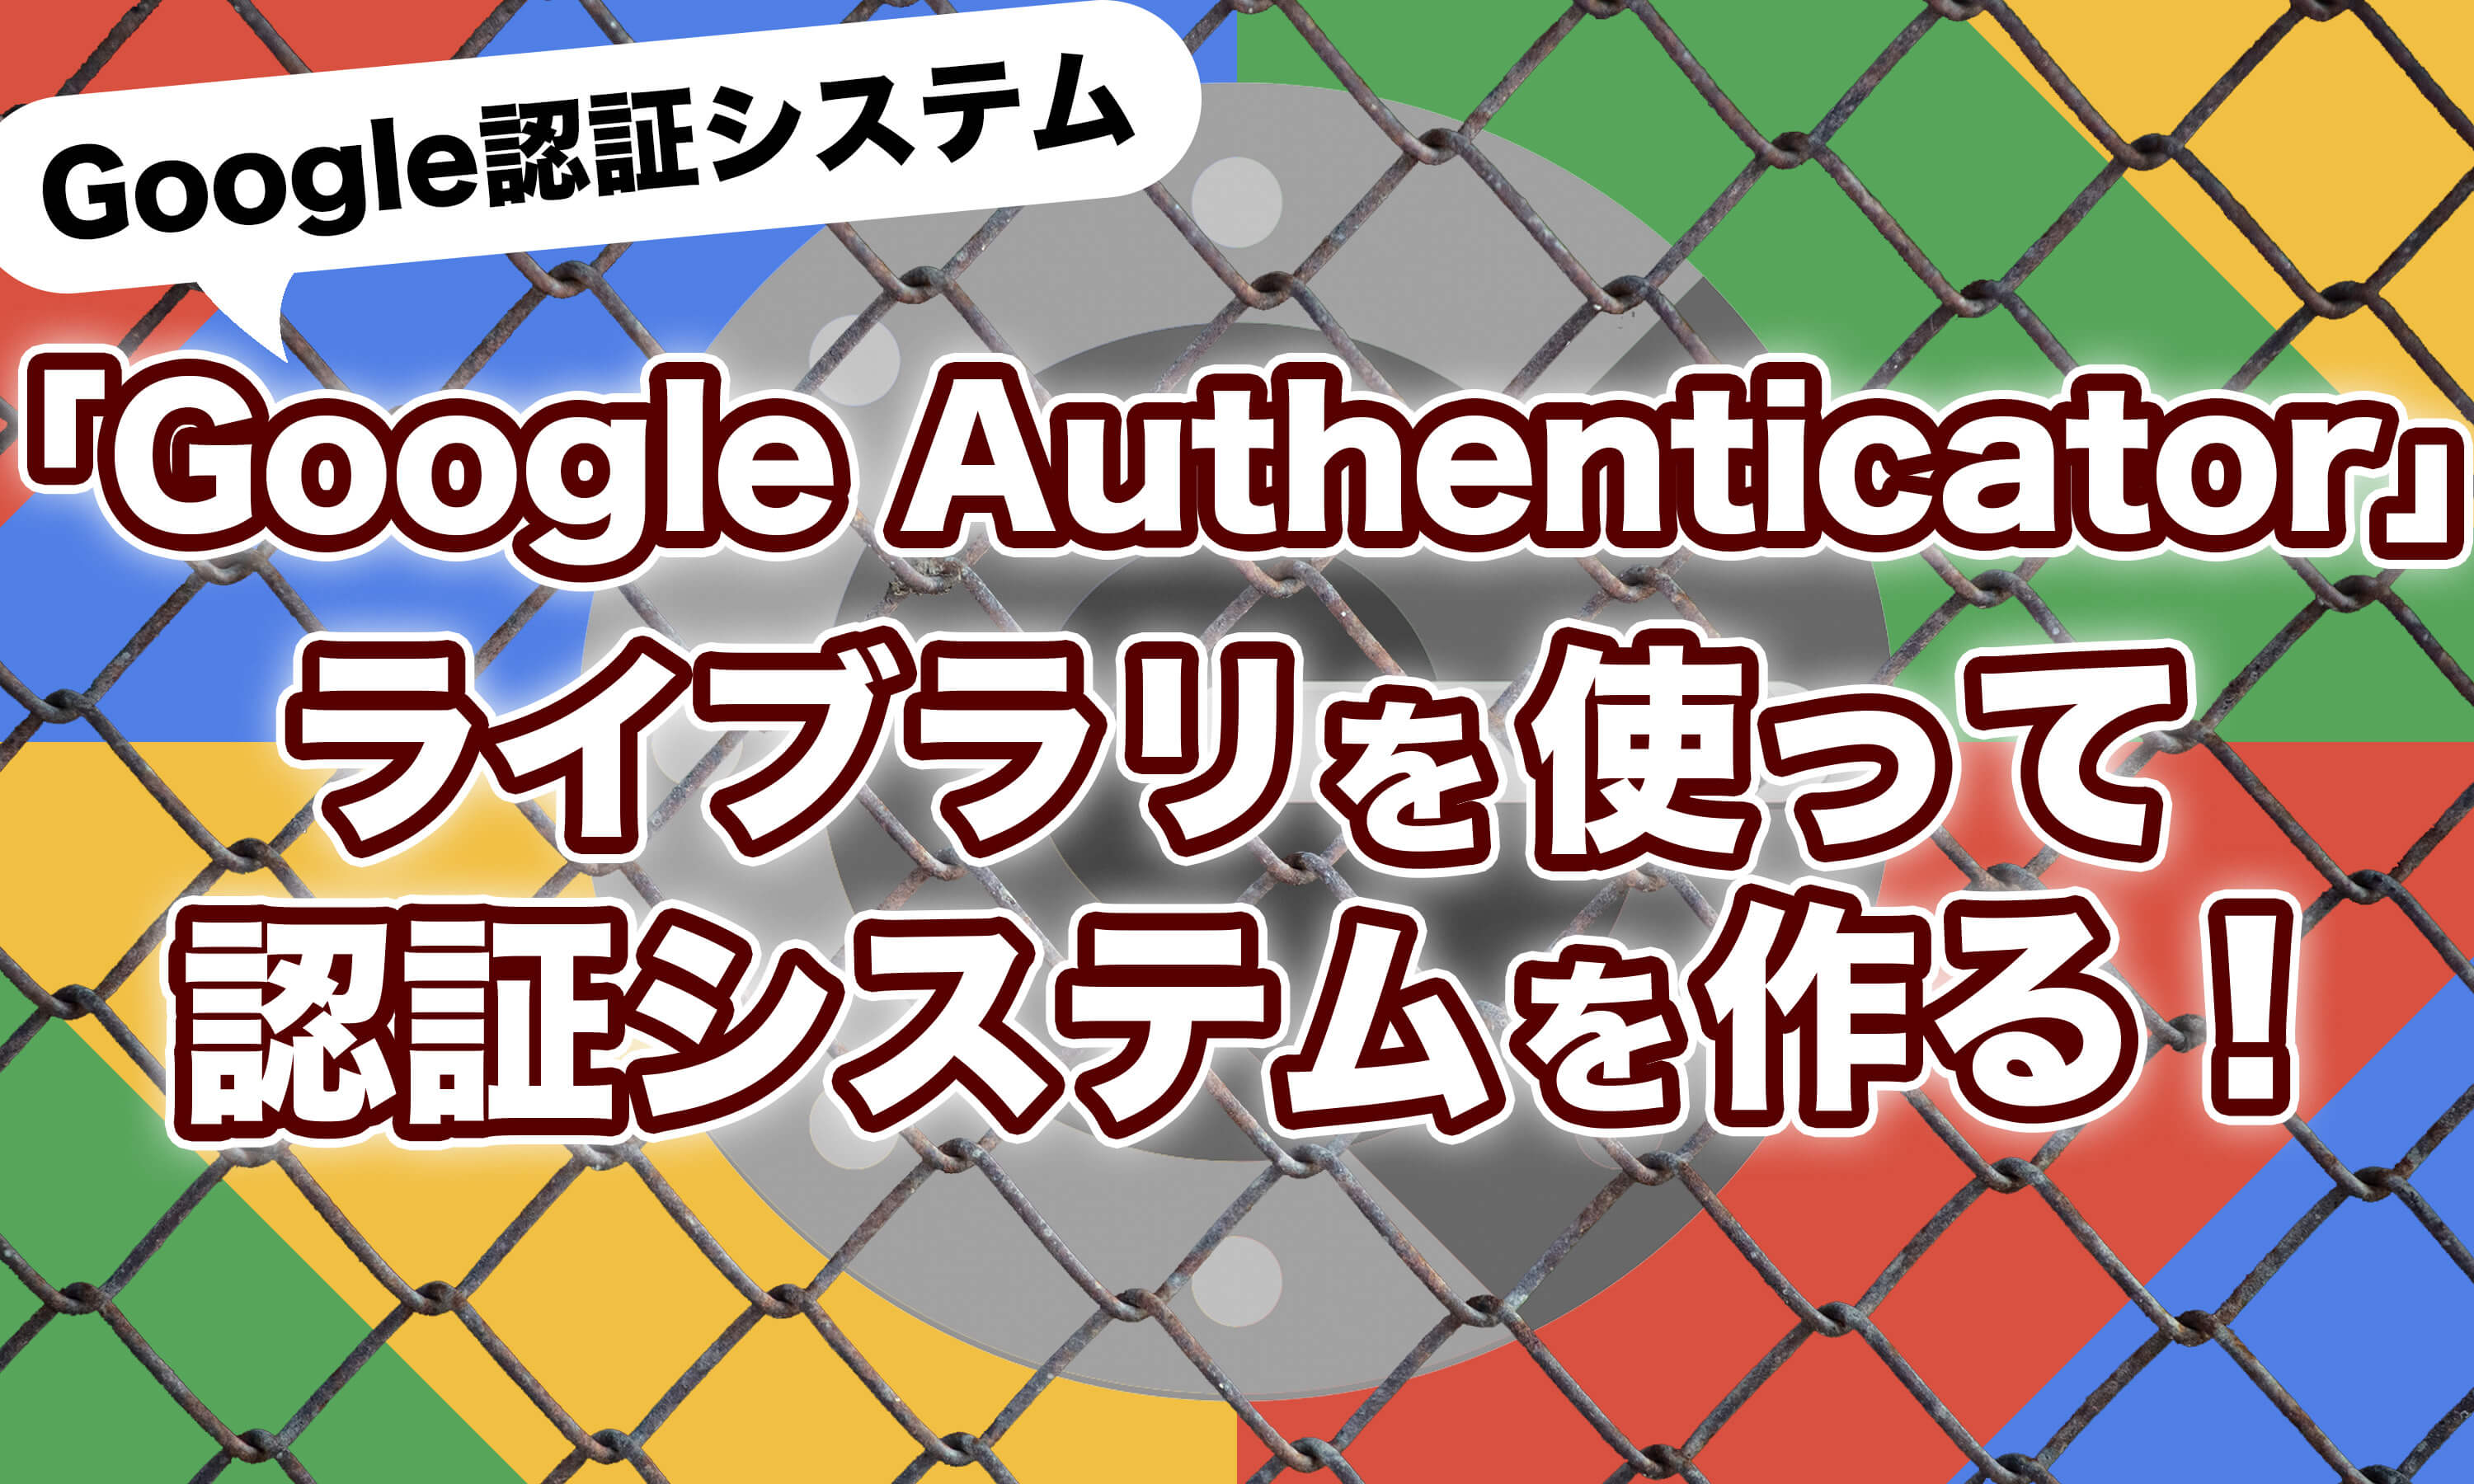 Google認証システムを「Google Authenticator」で自作するのボックス型リンクの画像